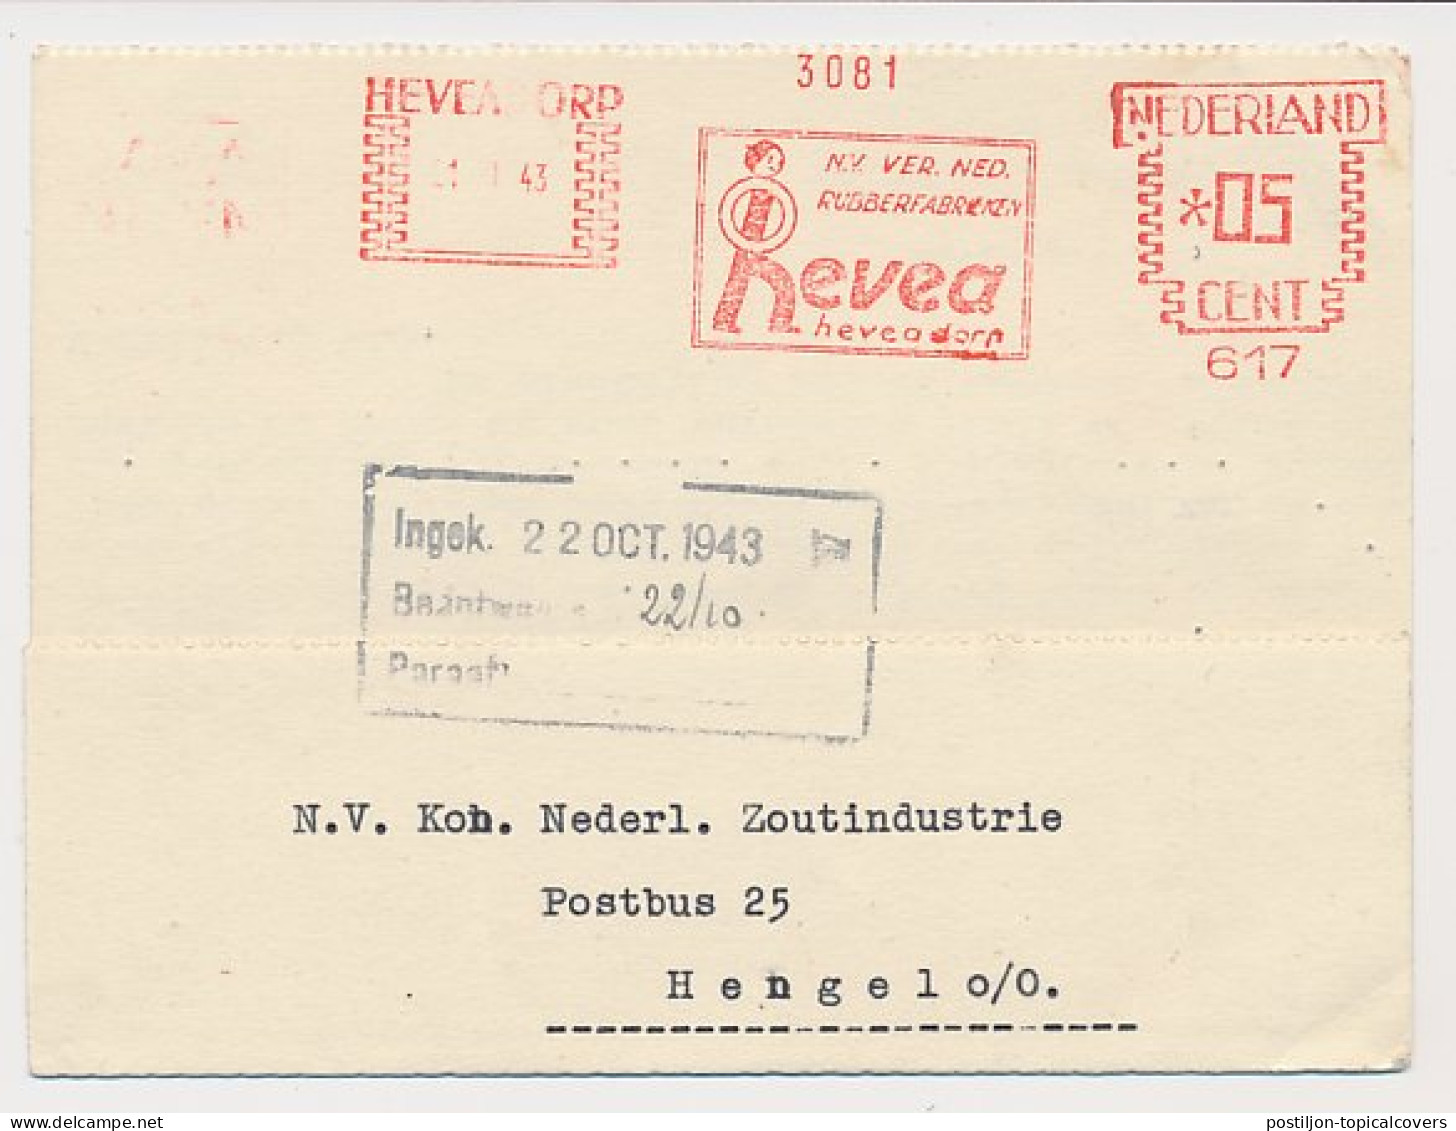 Meter Card Netherlands 1943 Rubber Factory - Heveadorp - Bomen